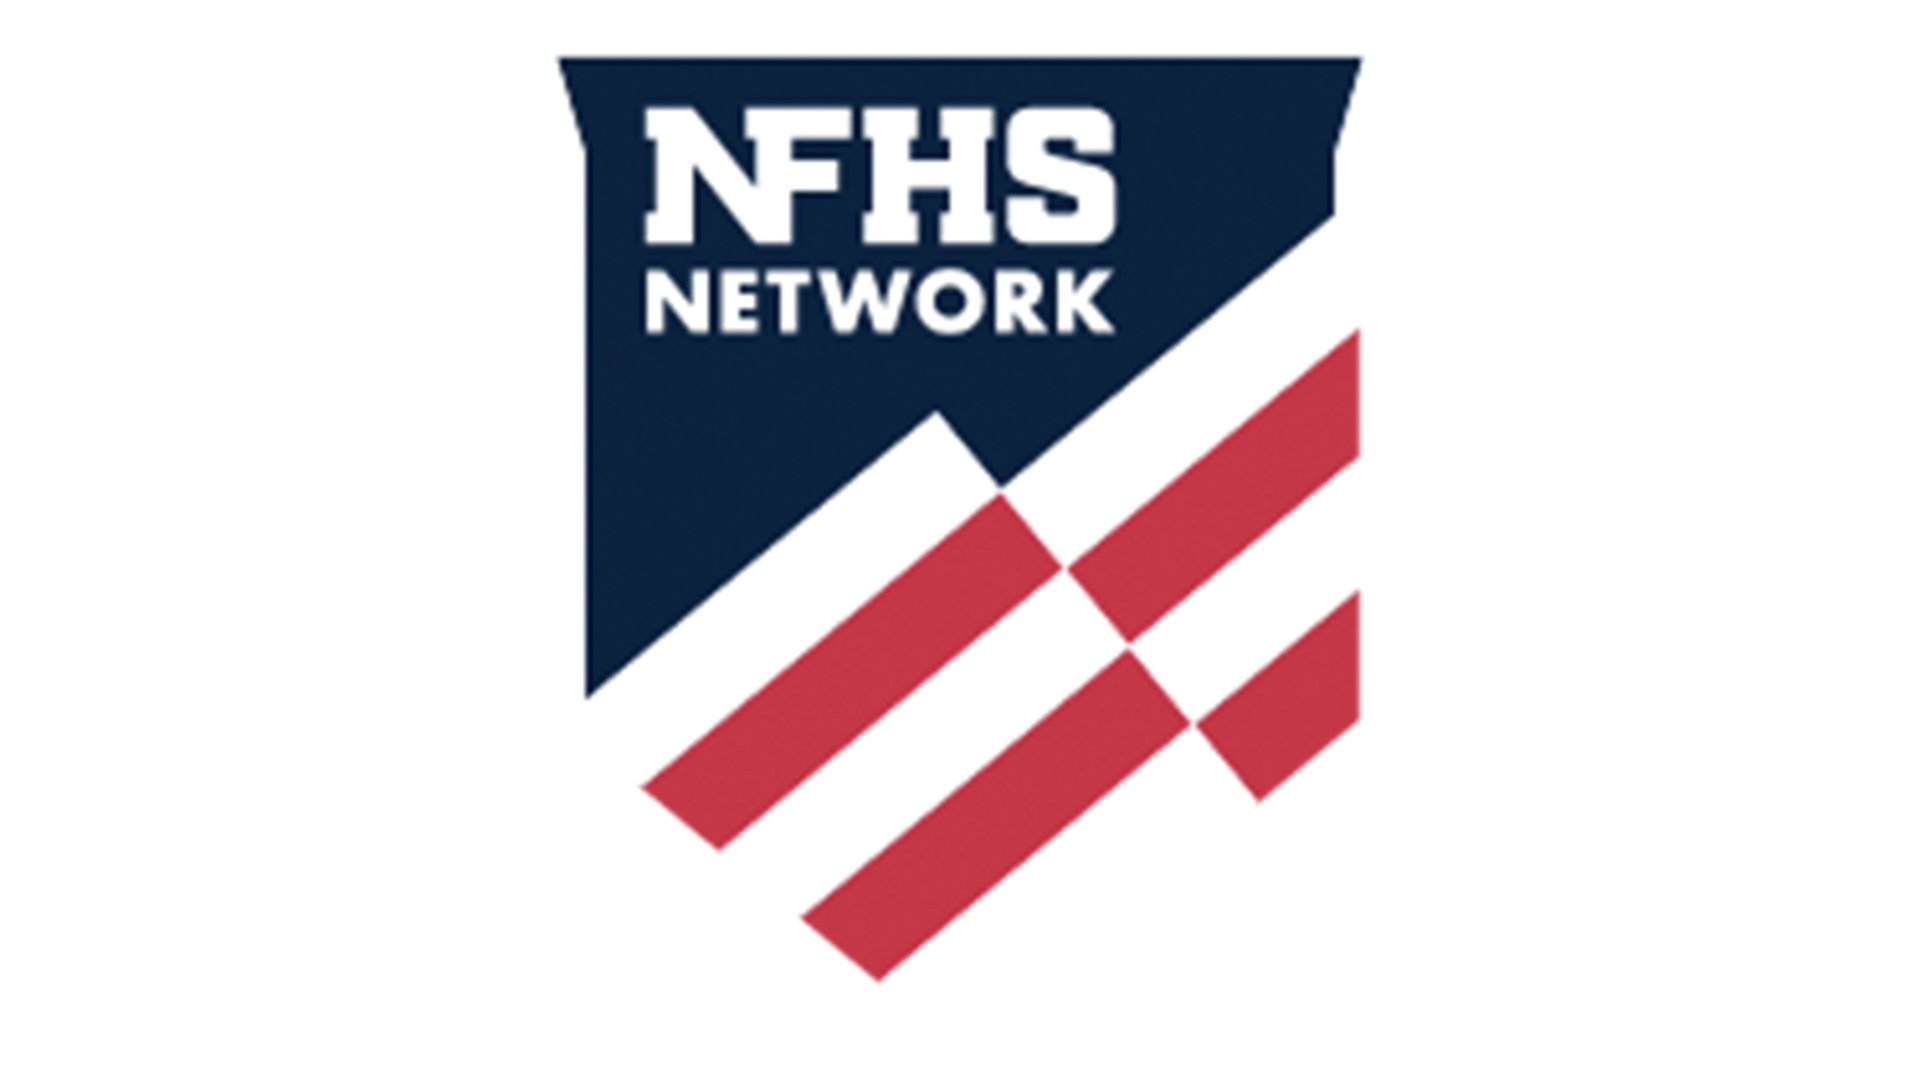 Partner_logos_0008_NFHS Network Logo.jpg